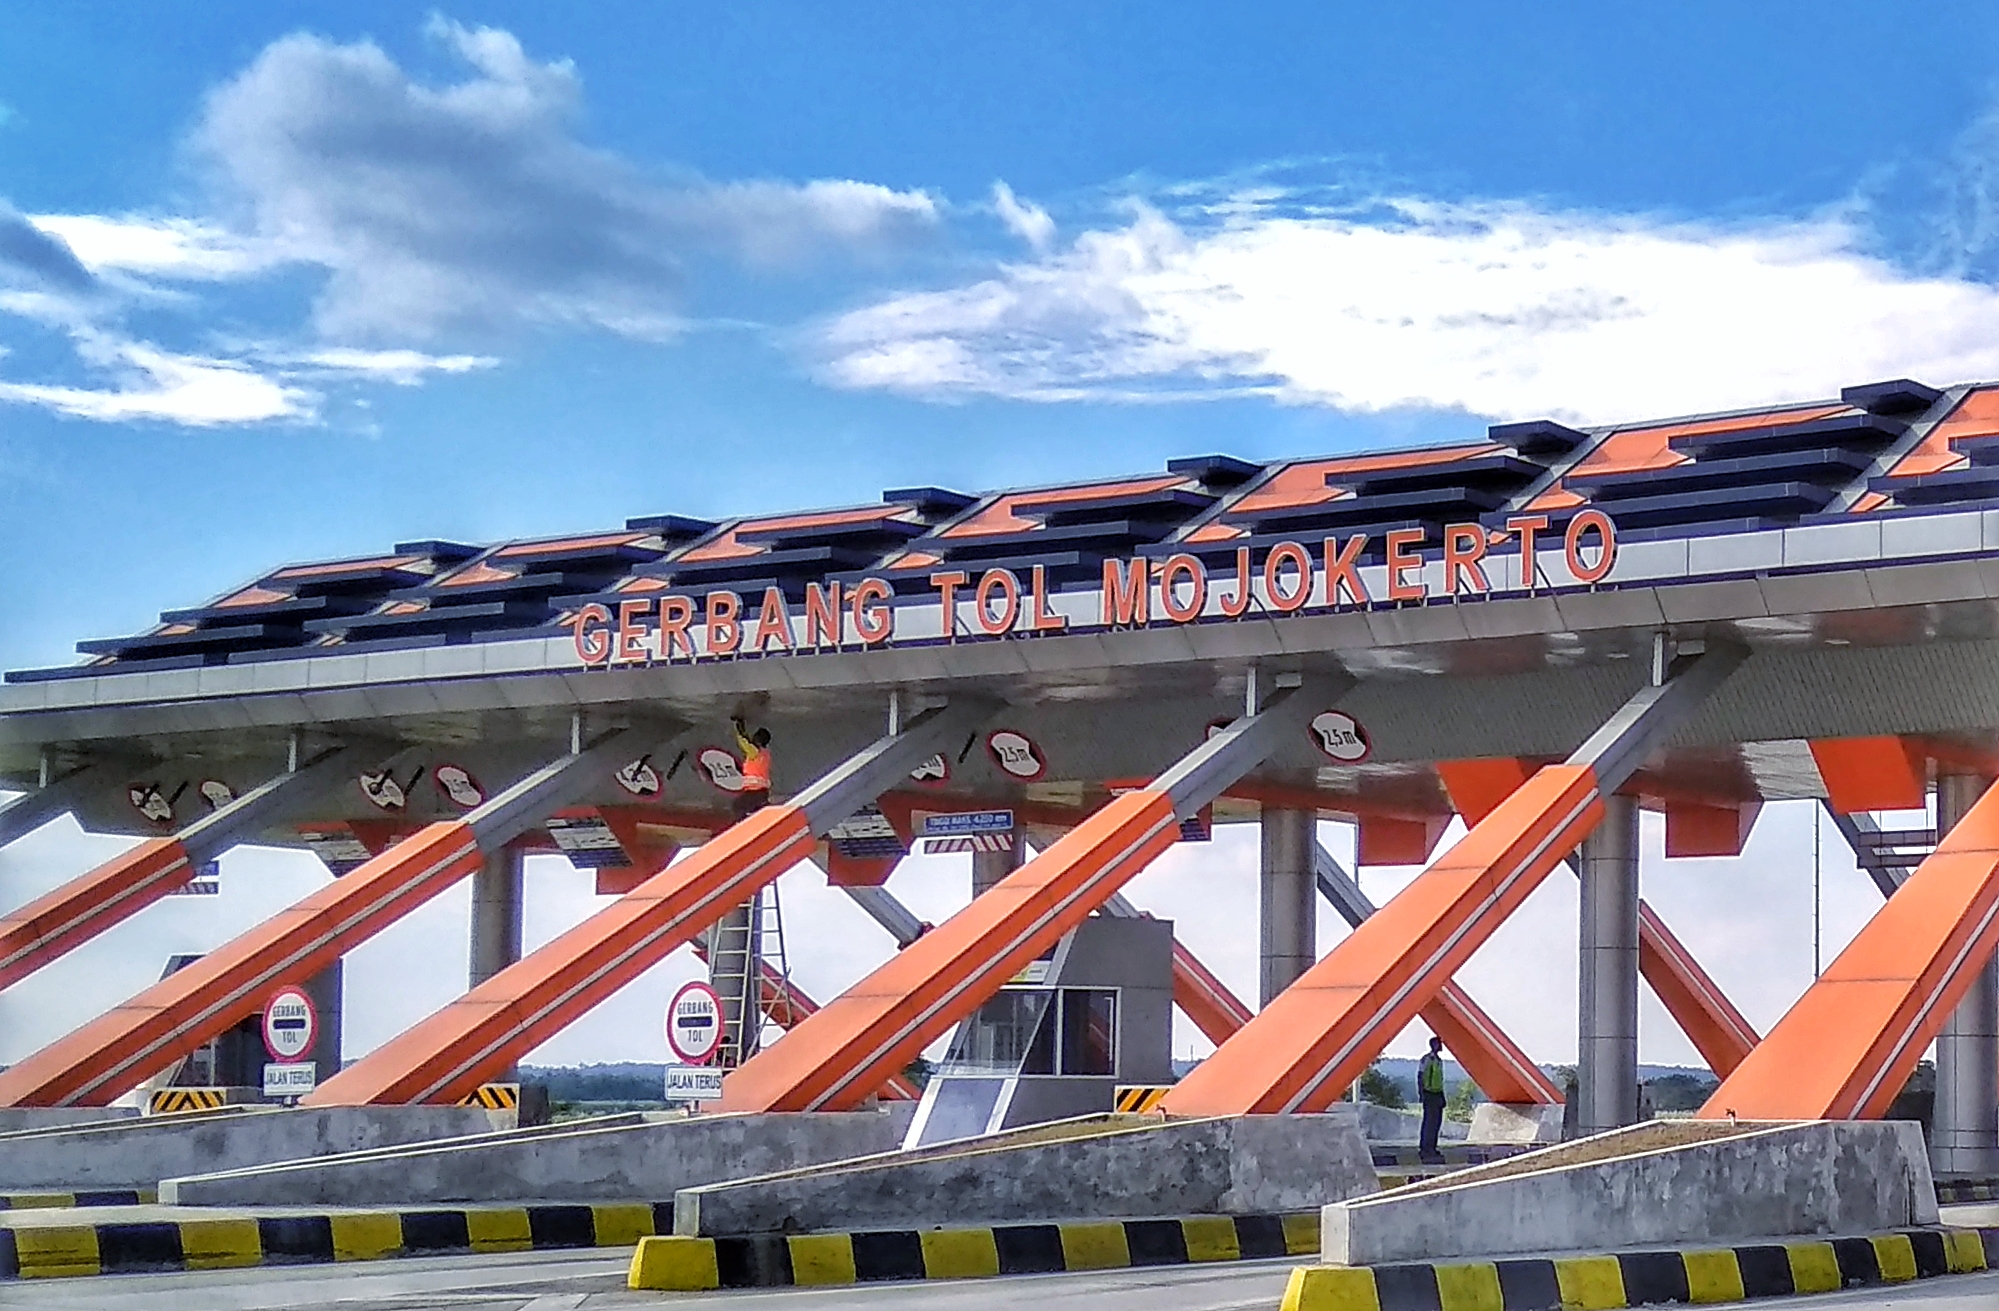 Gerbang Tol Mojokerto. (foto: ngopibareng)